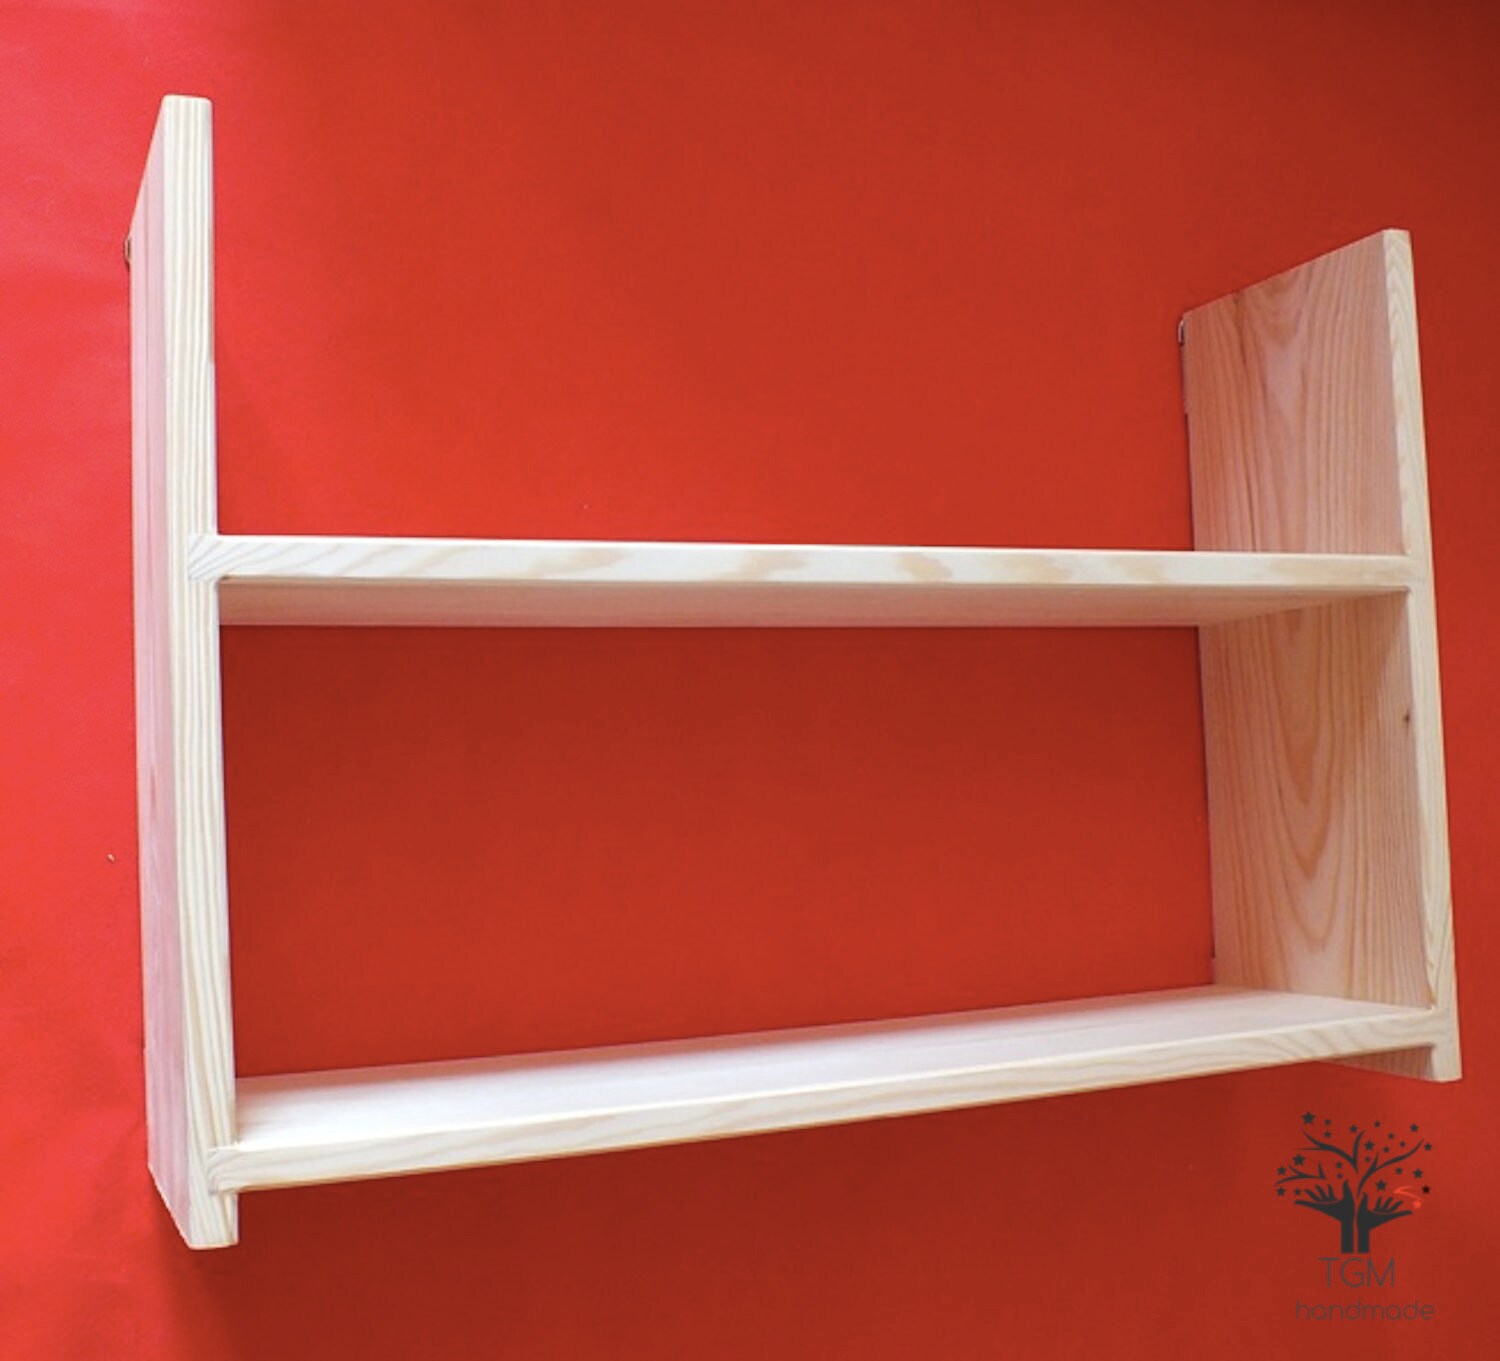 Solid Pine Shelves Unit Double Shelves Wooden Bookshelf Etsy